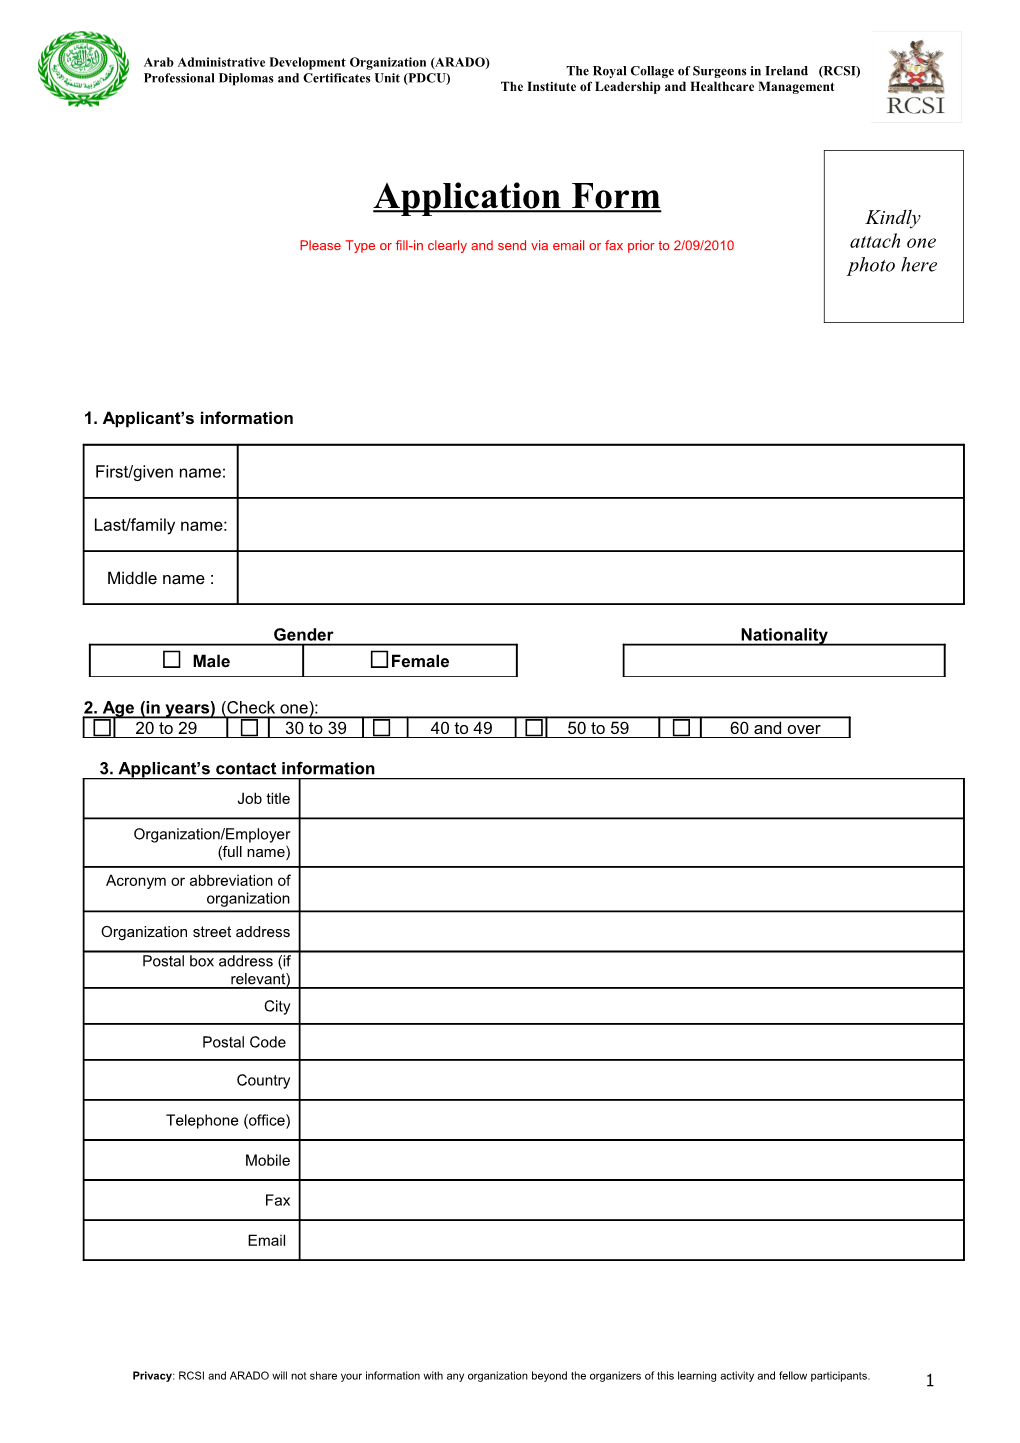 WBI ARADO M&E Course - Participant Application Form